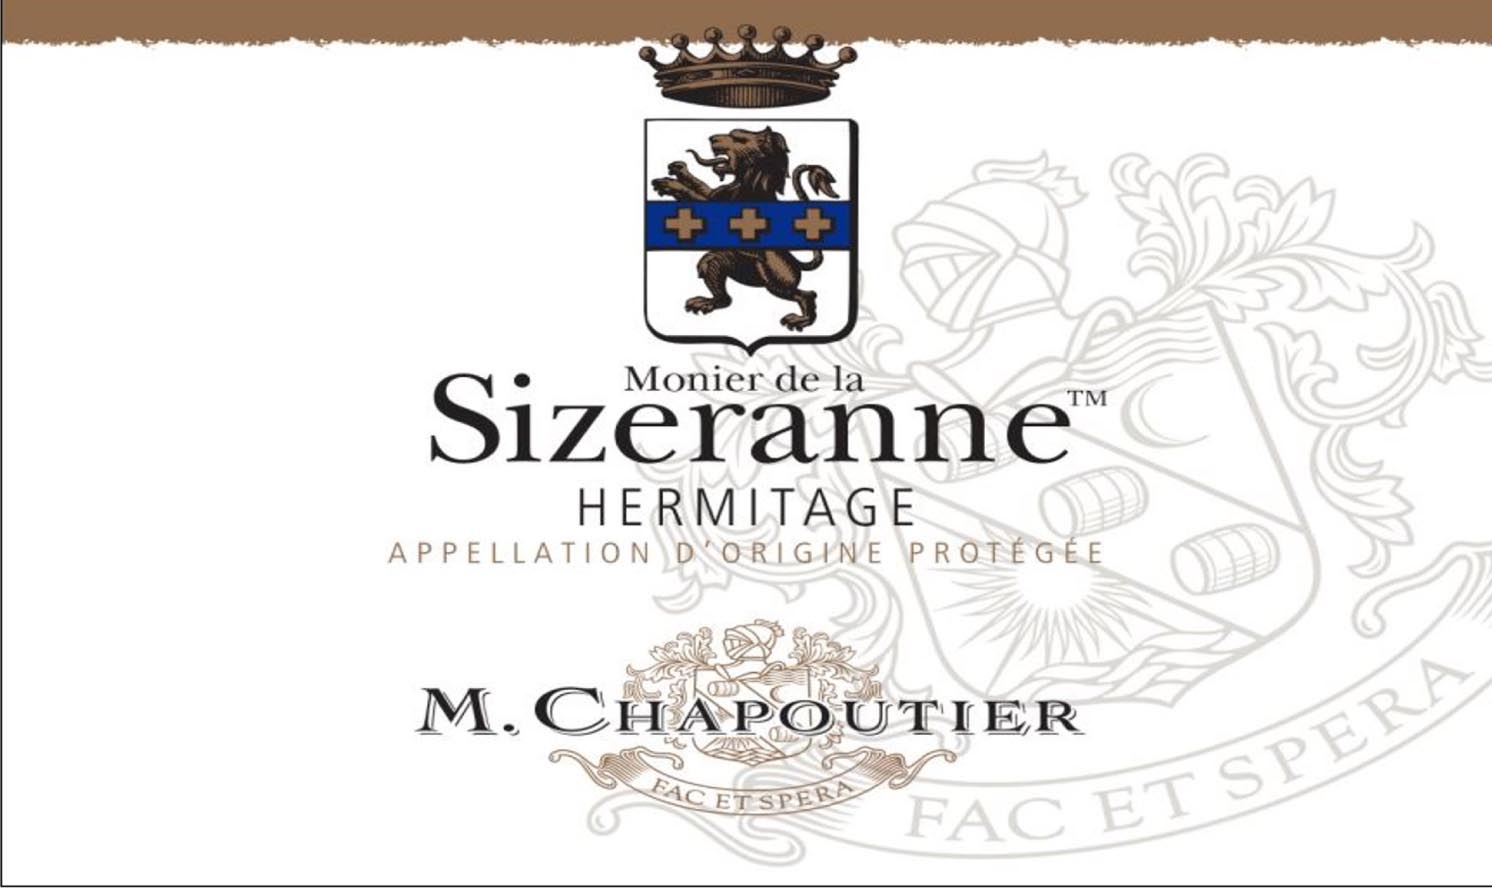 M. Chapoutier - Monier de la Sizeranne label